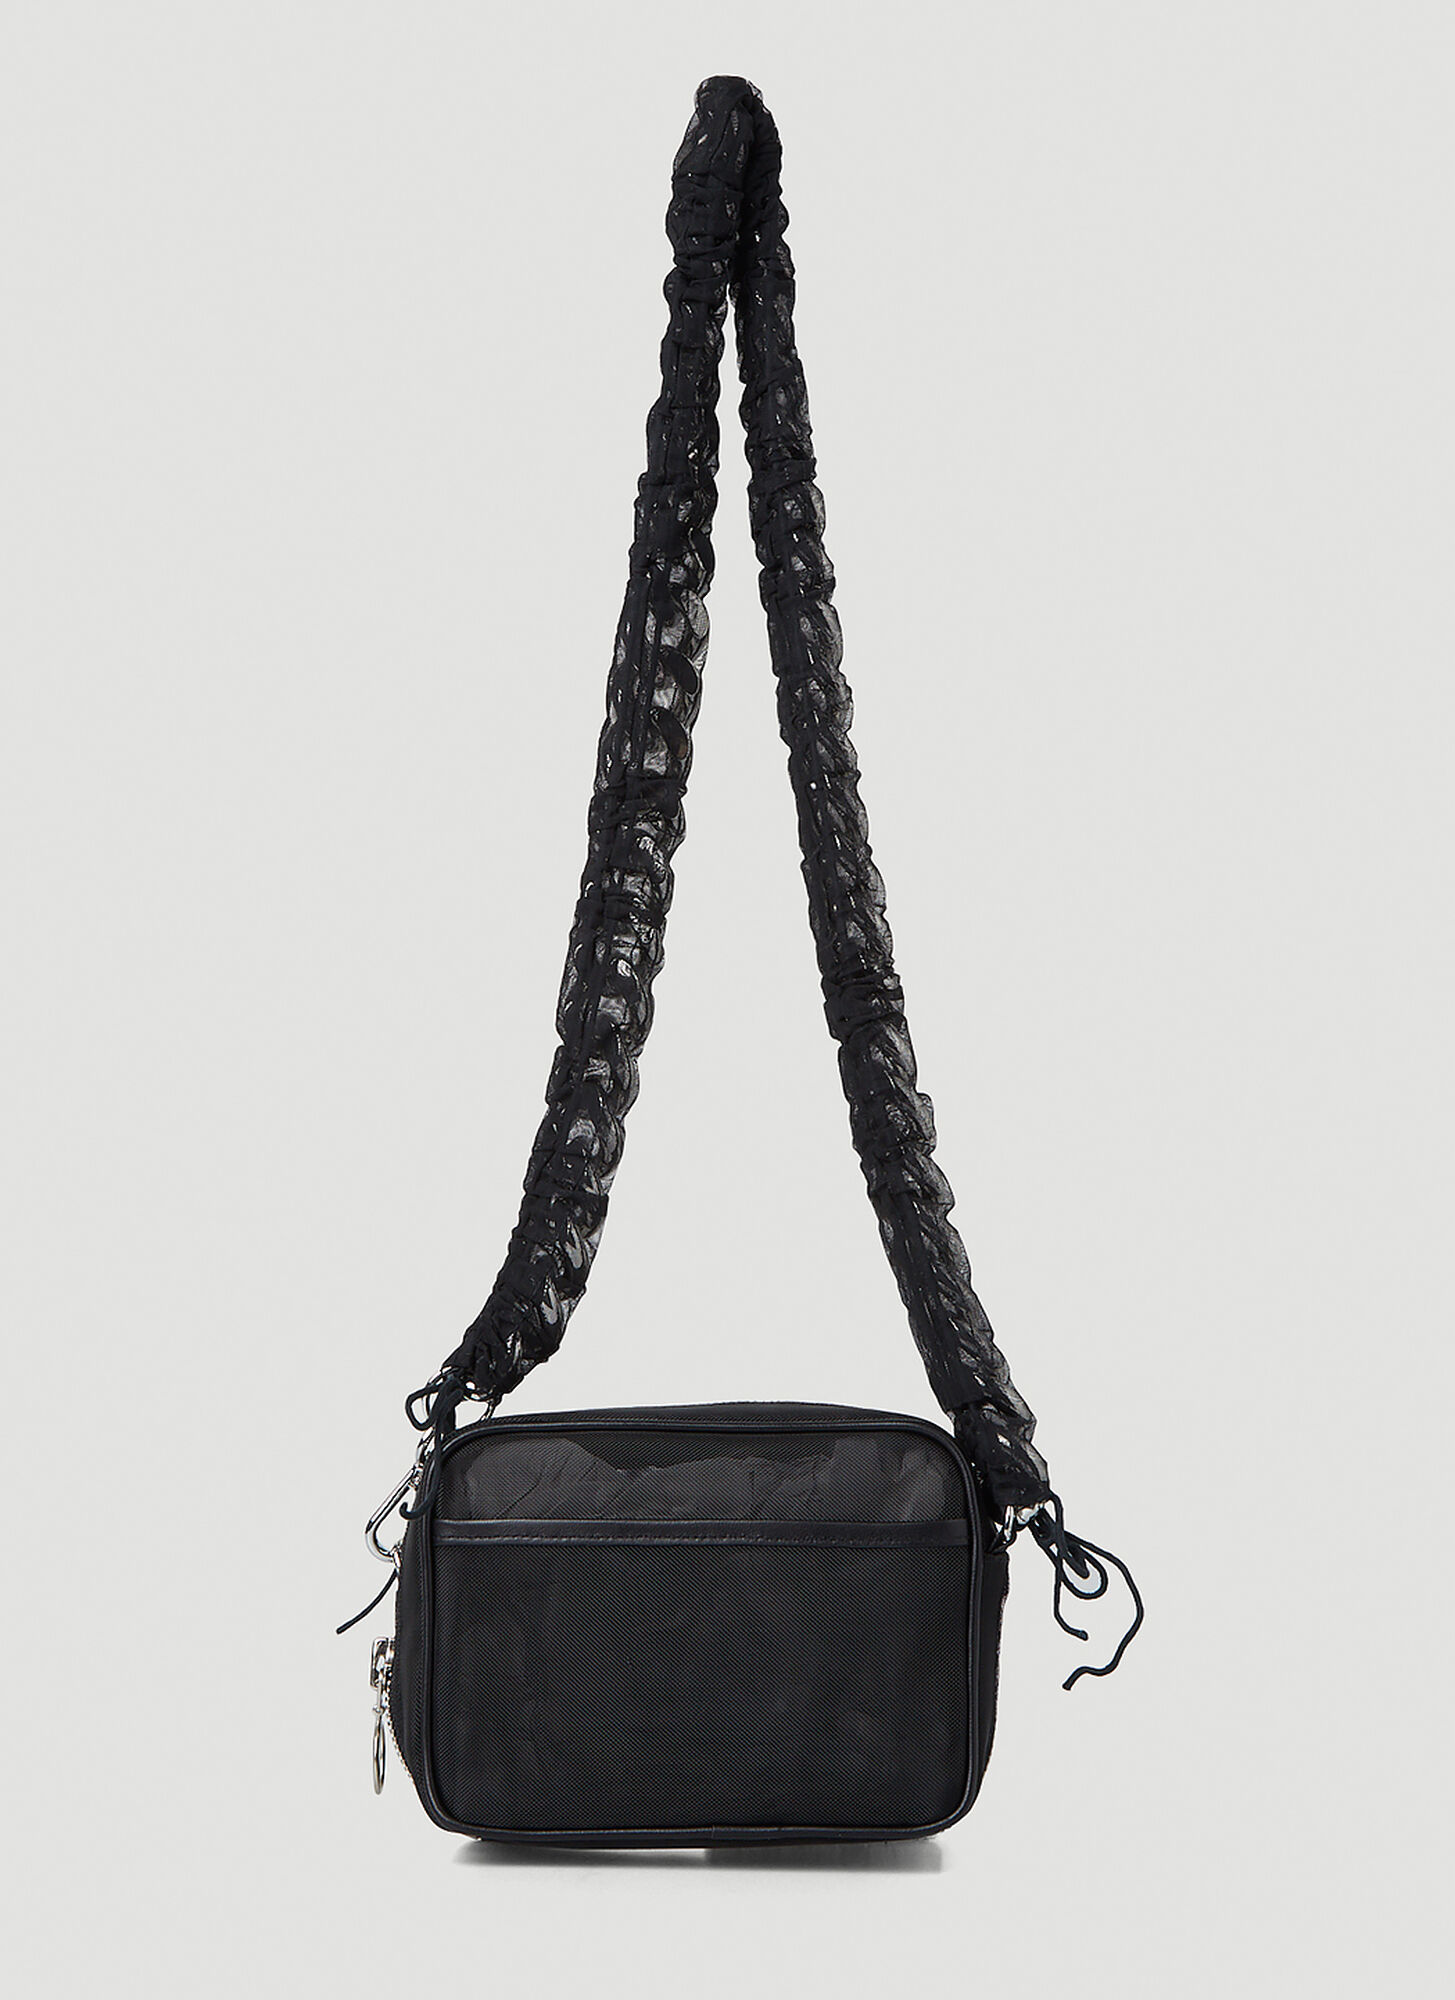 Kara Tulle Leather Camera Shoulder Bag In Black